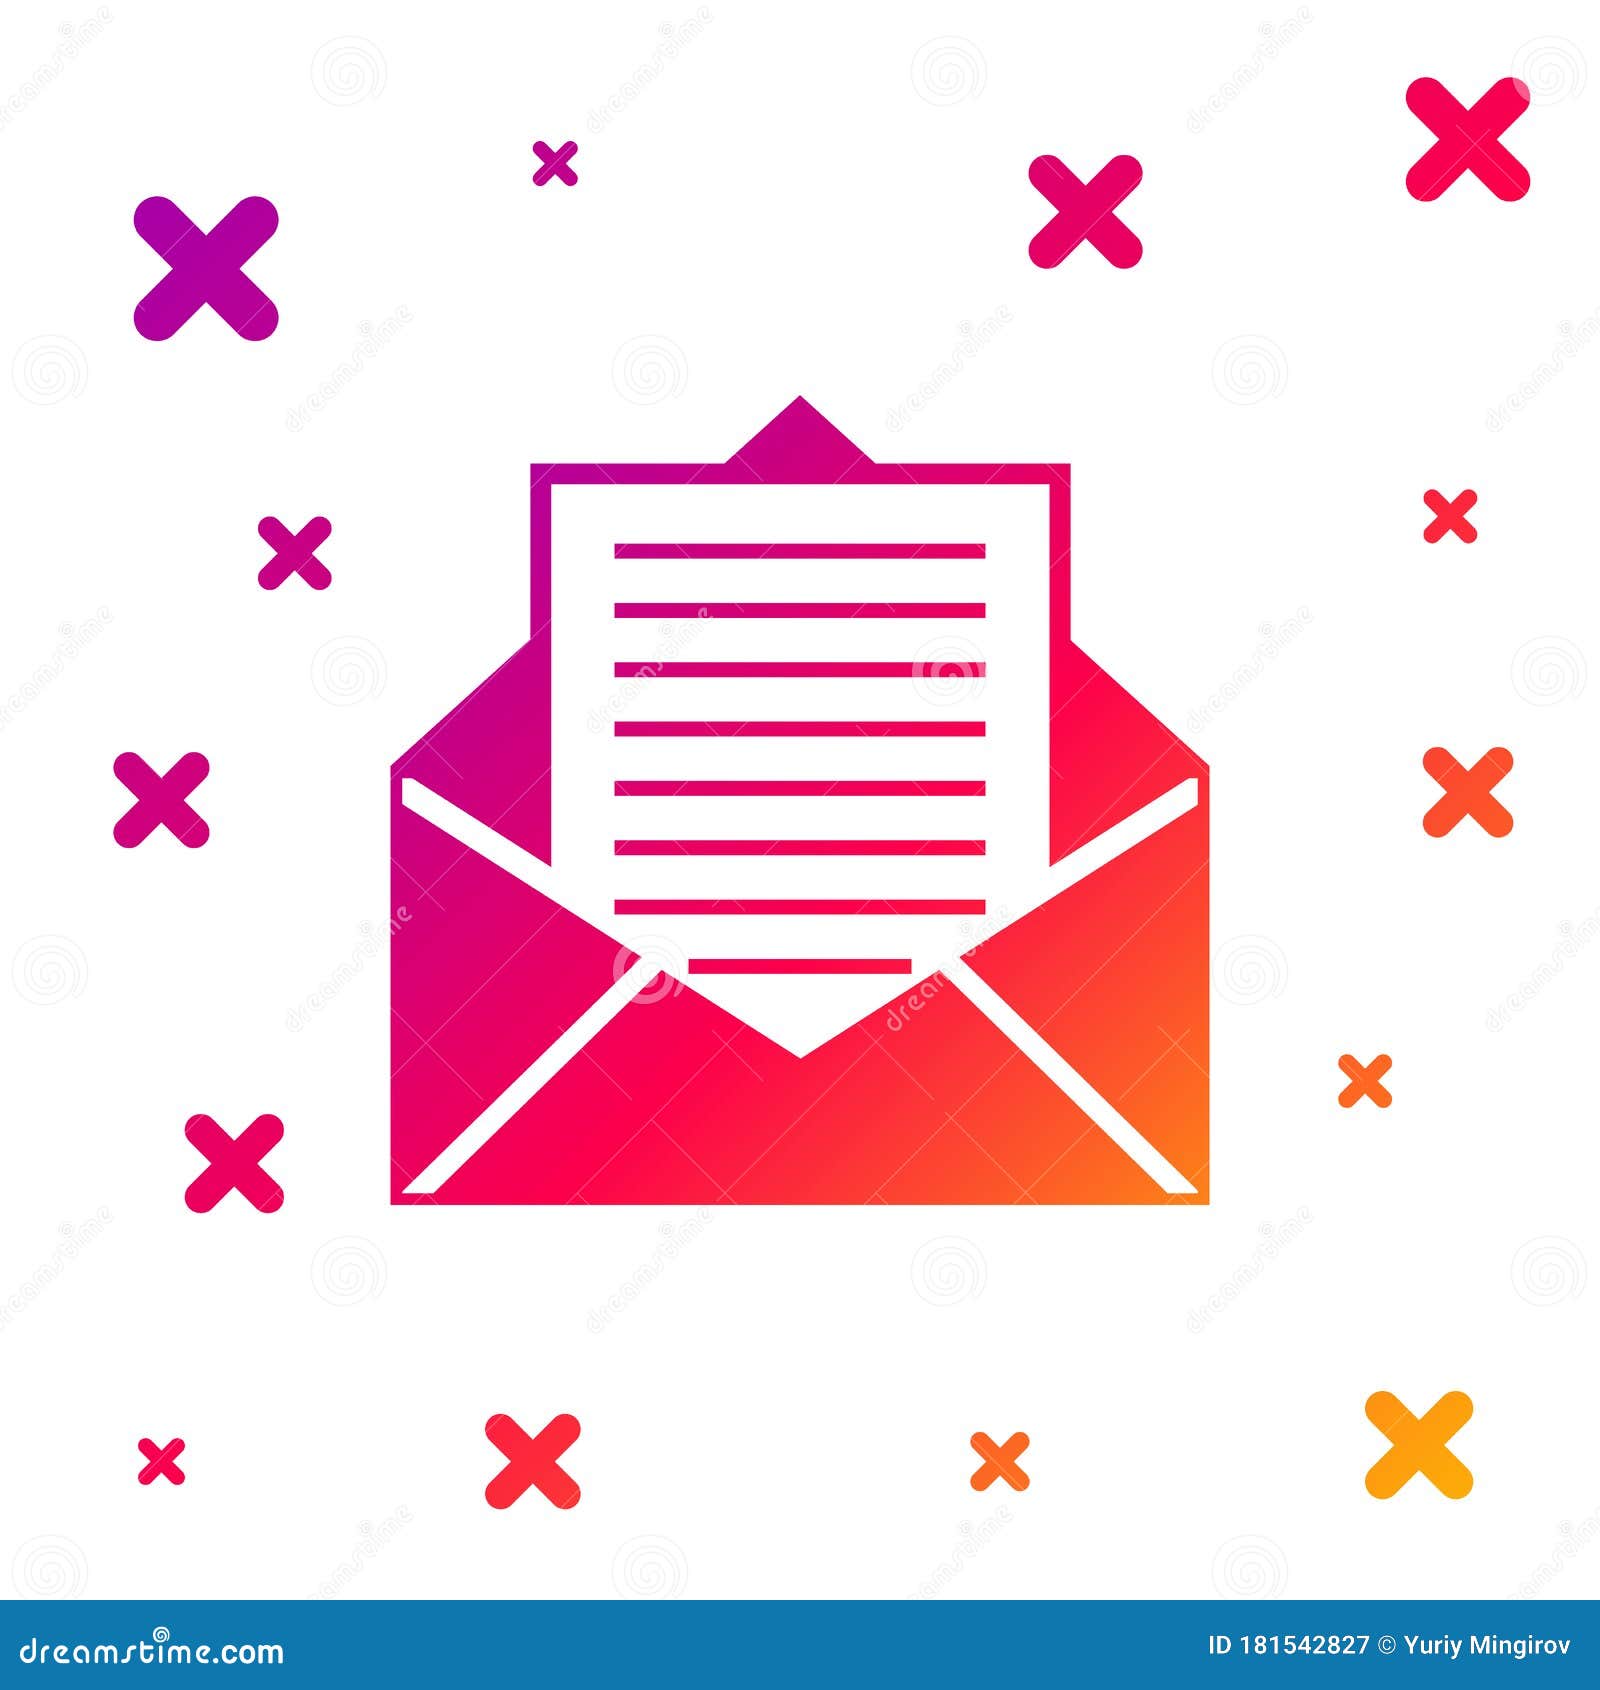 Những icon thư điện tử và thư trên nền trắng với màu gradient sáng tạo này sẽ khiến cho giao diện email của bạn trở nên độc đáo và thu hút hơn bao giờ hết. Hãy cùng thưởng thức các mẫu icon này và mang đến sự mới mẻ cho thư của bạn.